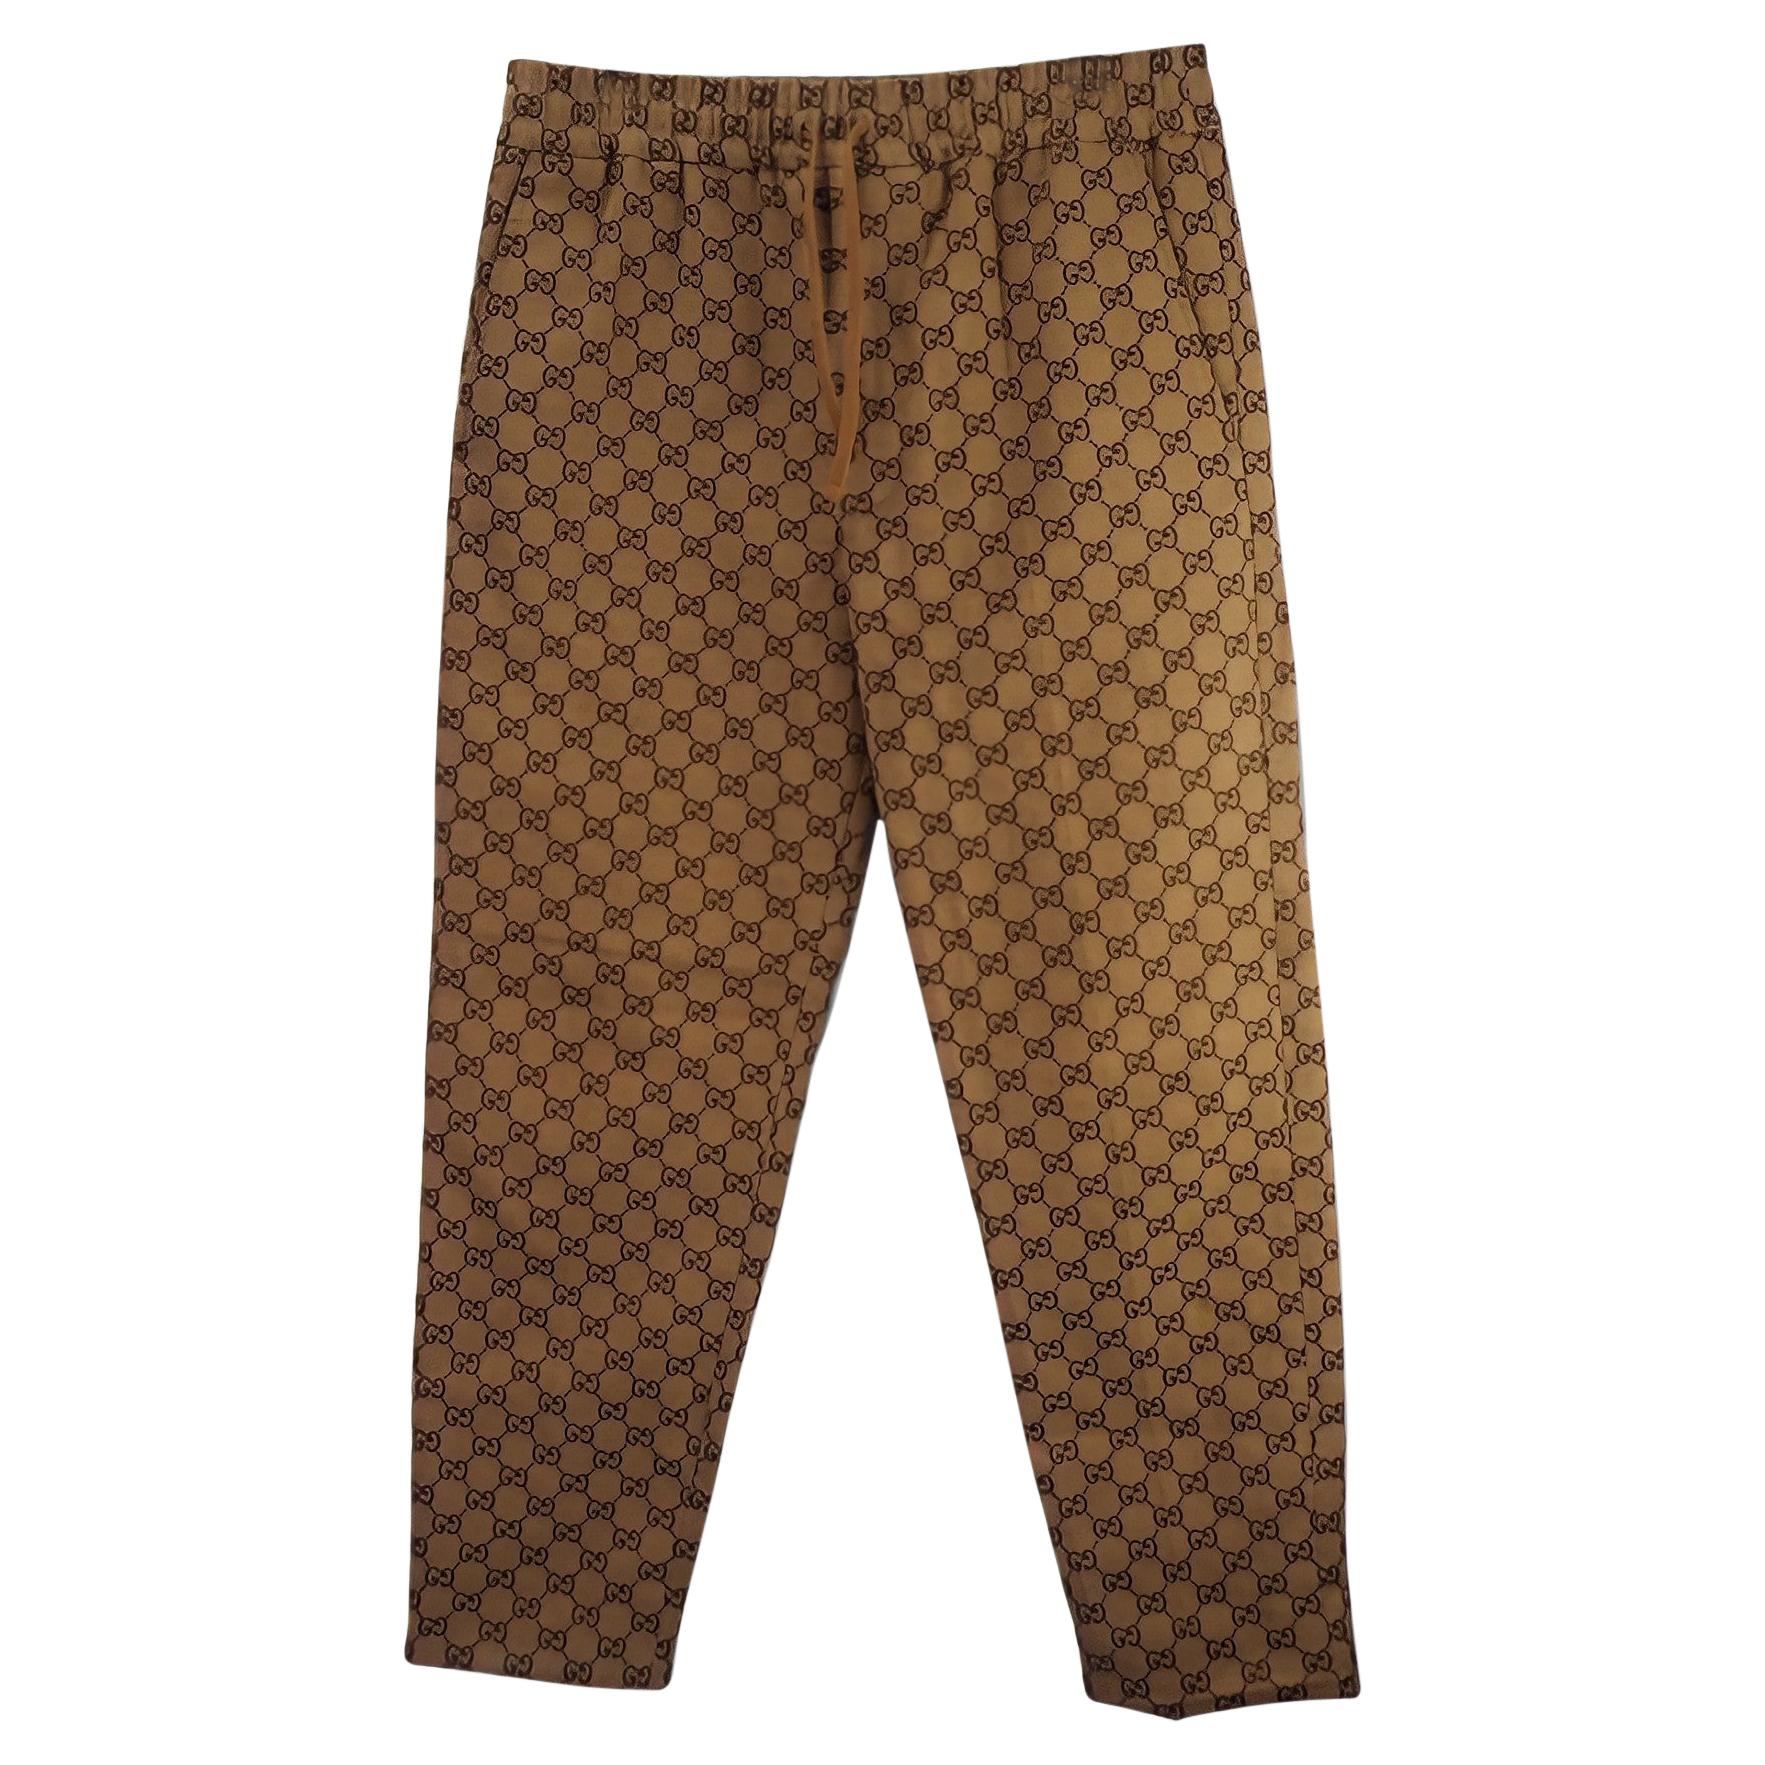  Gucci Canvas Jacquard Jogging Pants - Size 44 (569769)